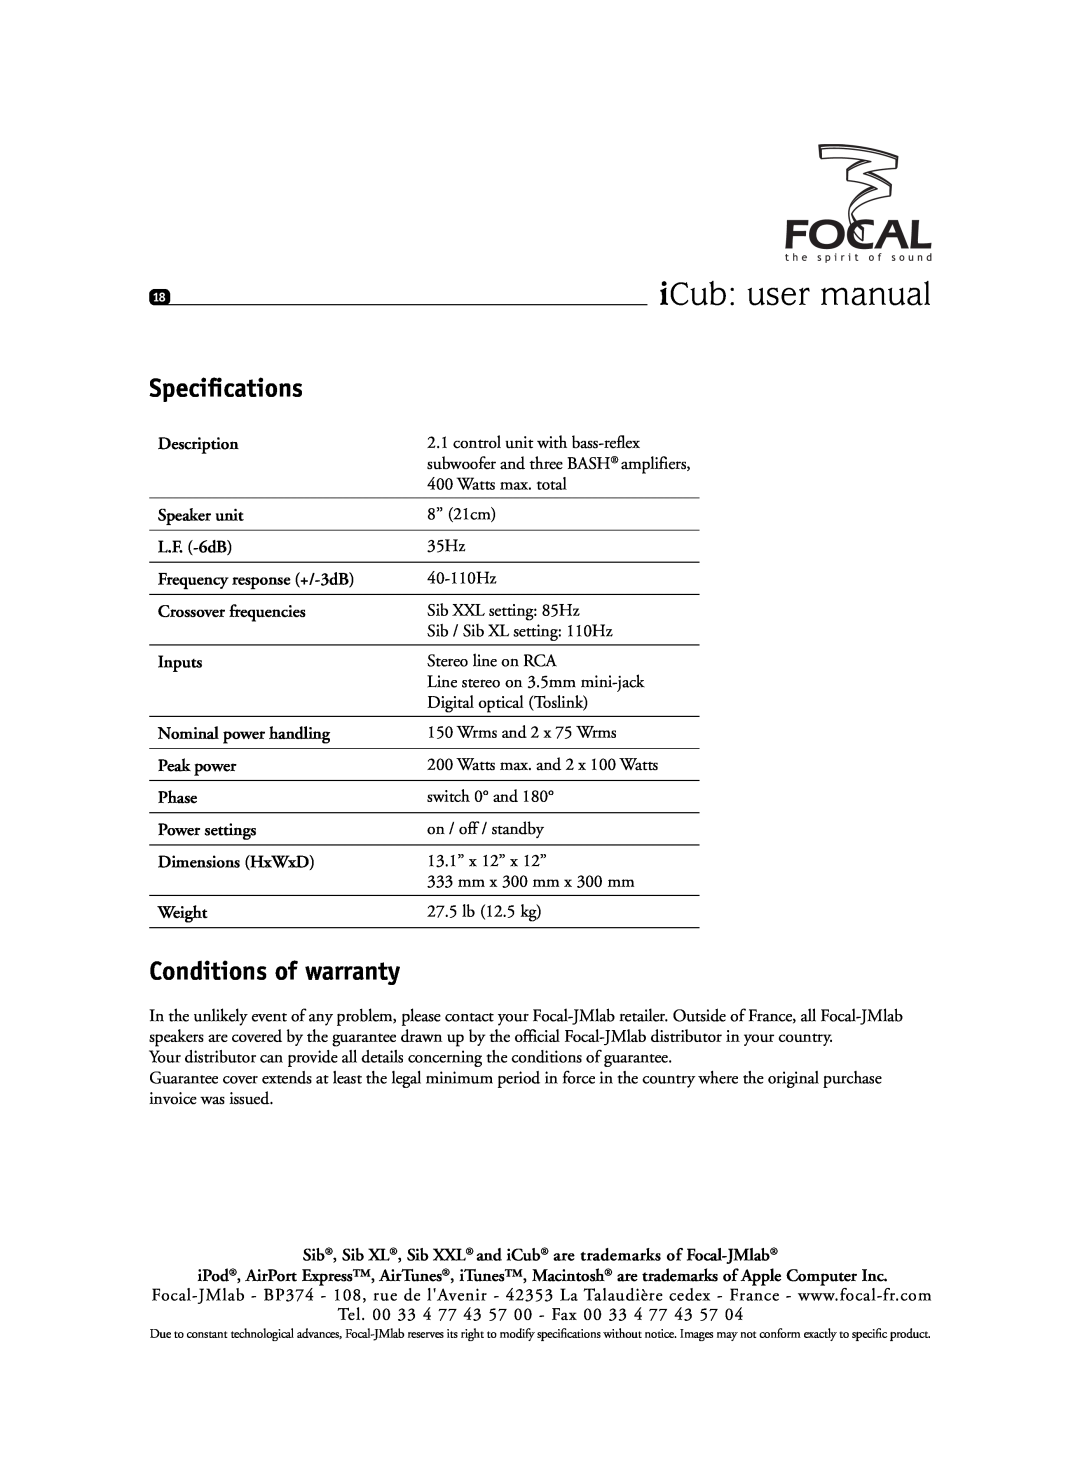 Focal SIB XXL, Sib XL user manual Conditions of warranty, Speciﬁcations 